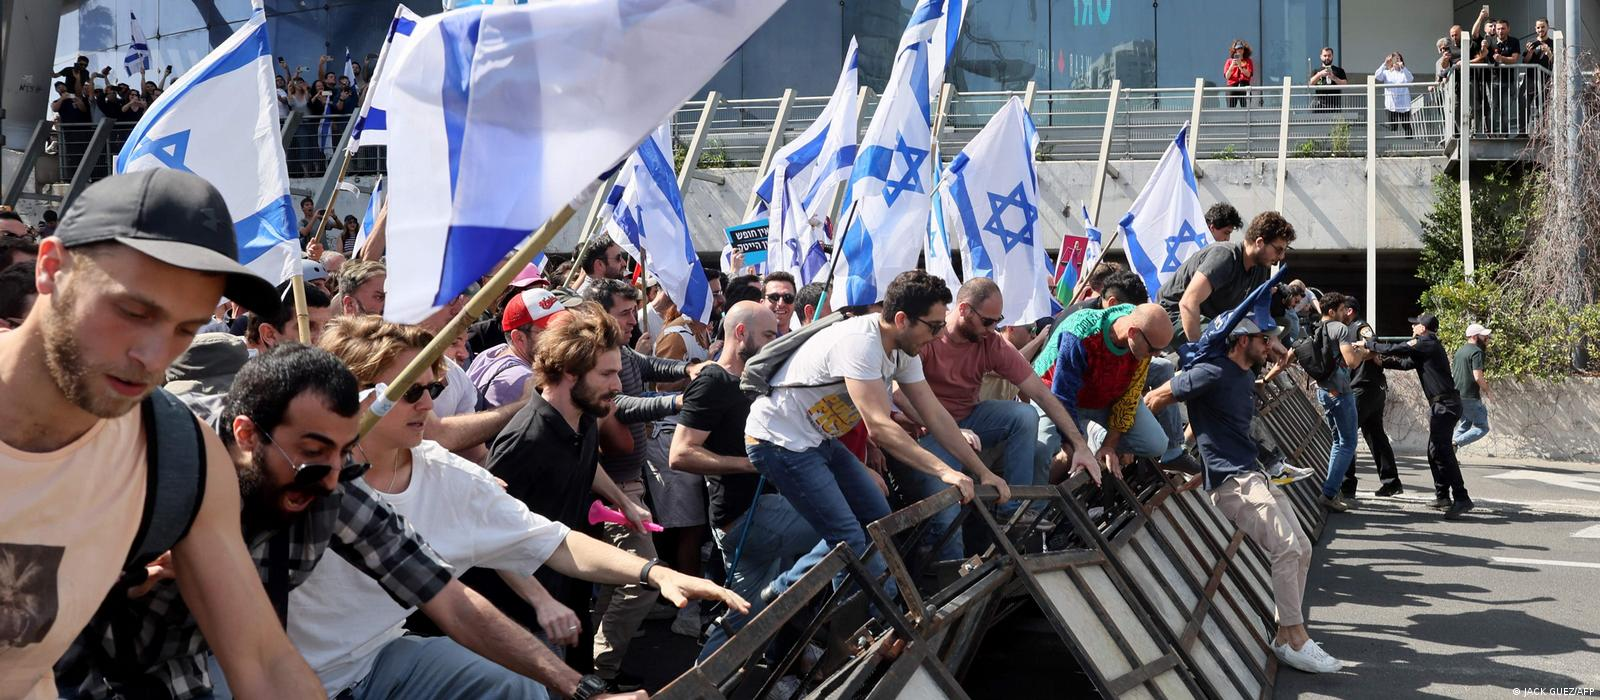 Еврейский майдан: «величайший кризис в истории Израиля»